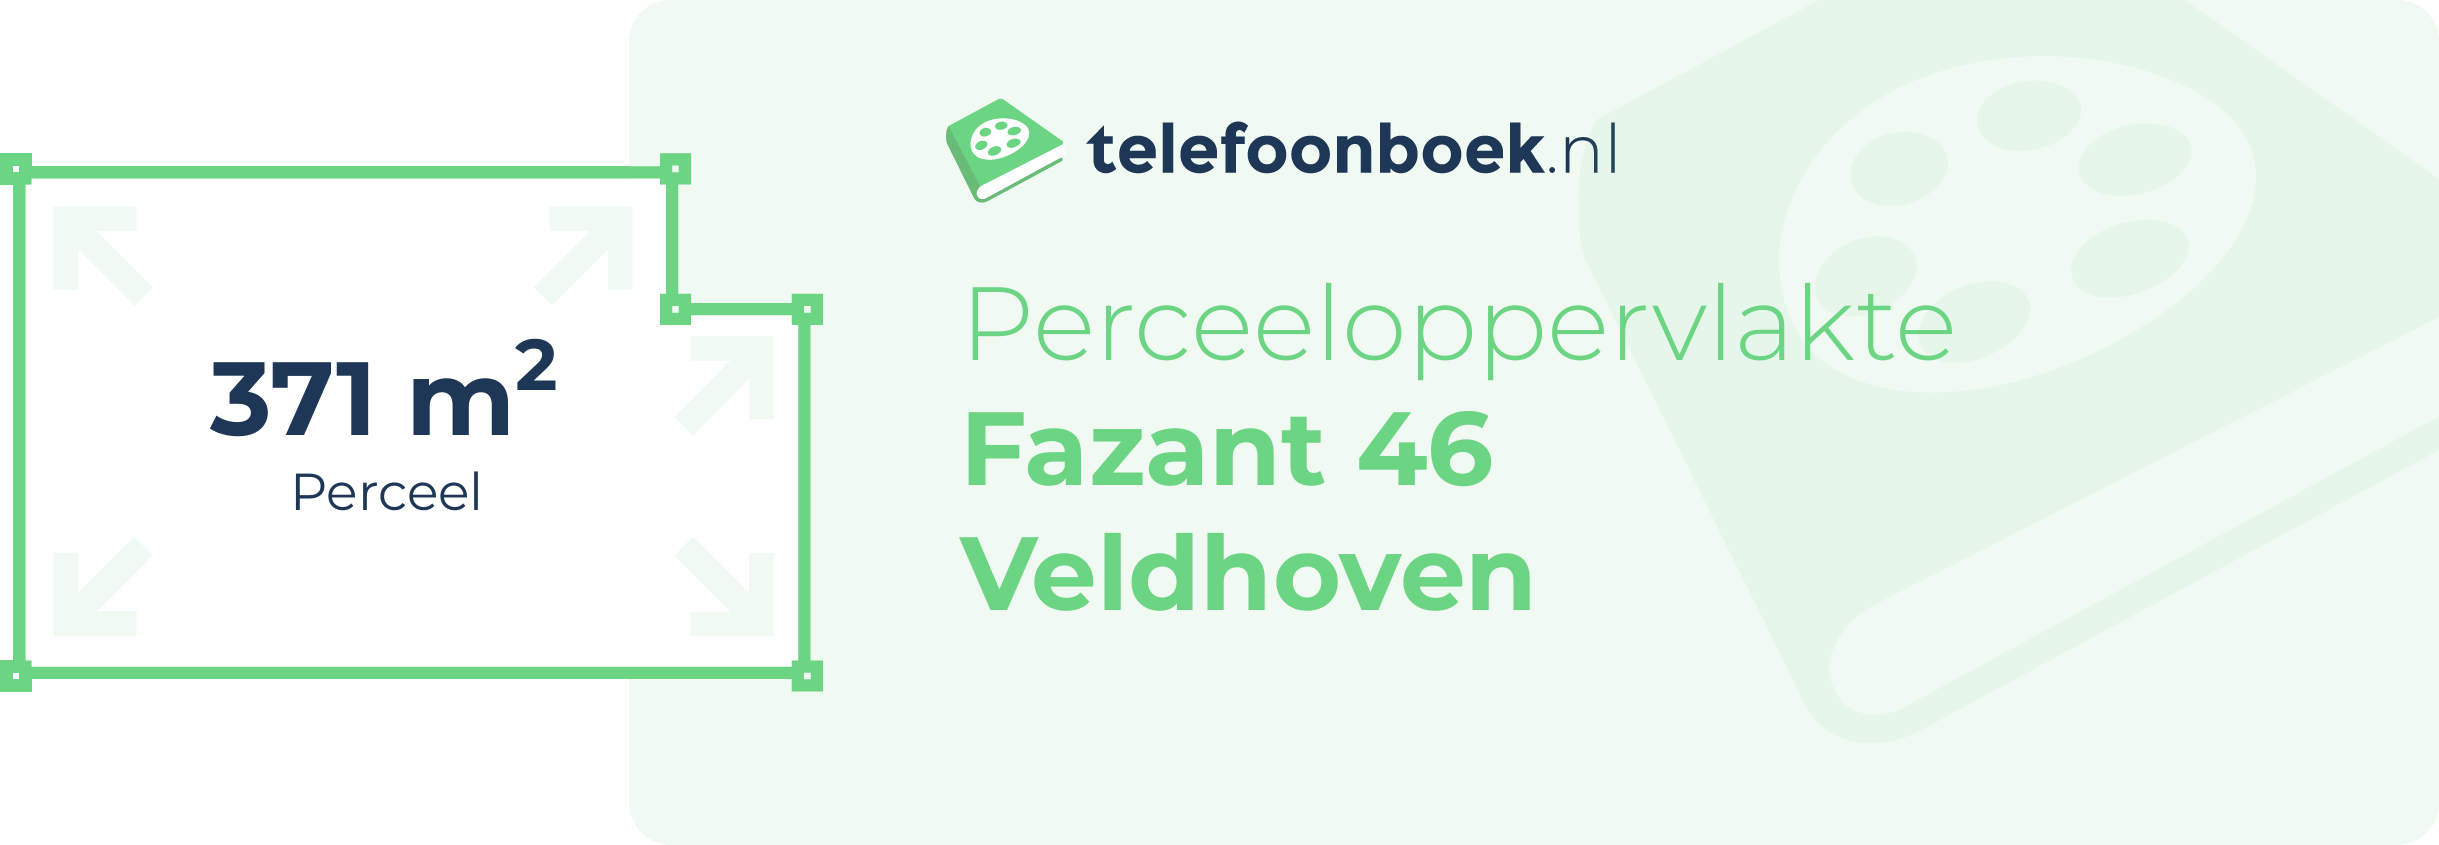 Perceeloppervlakte Fazant 46 Veldhoven